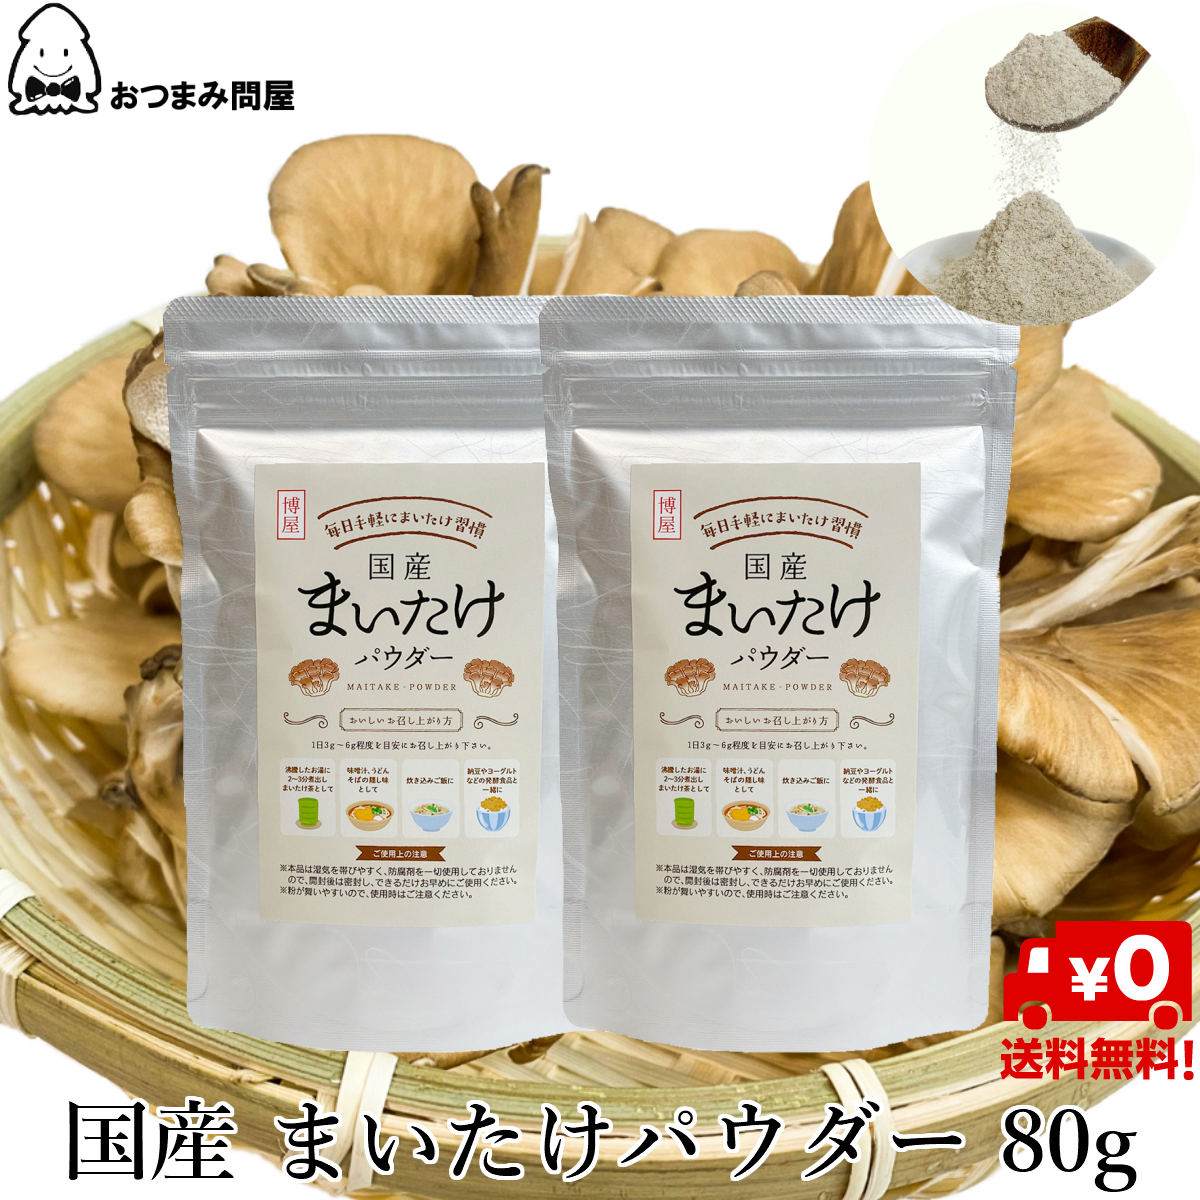 舞菇粉 日本產舞菇粉 80g x 2包 舞菇粉末 舞菇 常溫保存 鋁包 夾鏈袋裝 日本必買 | 日本樂天熱銷